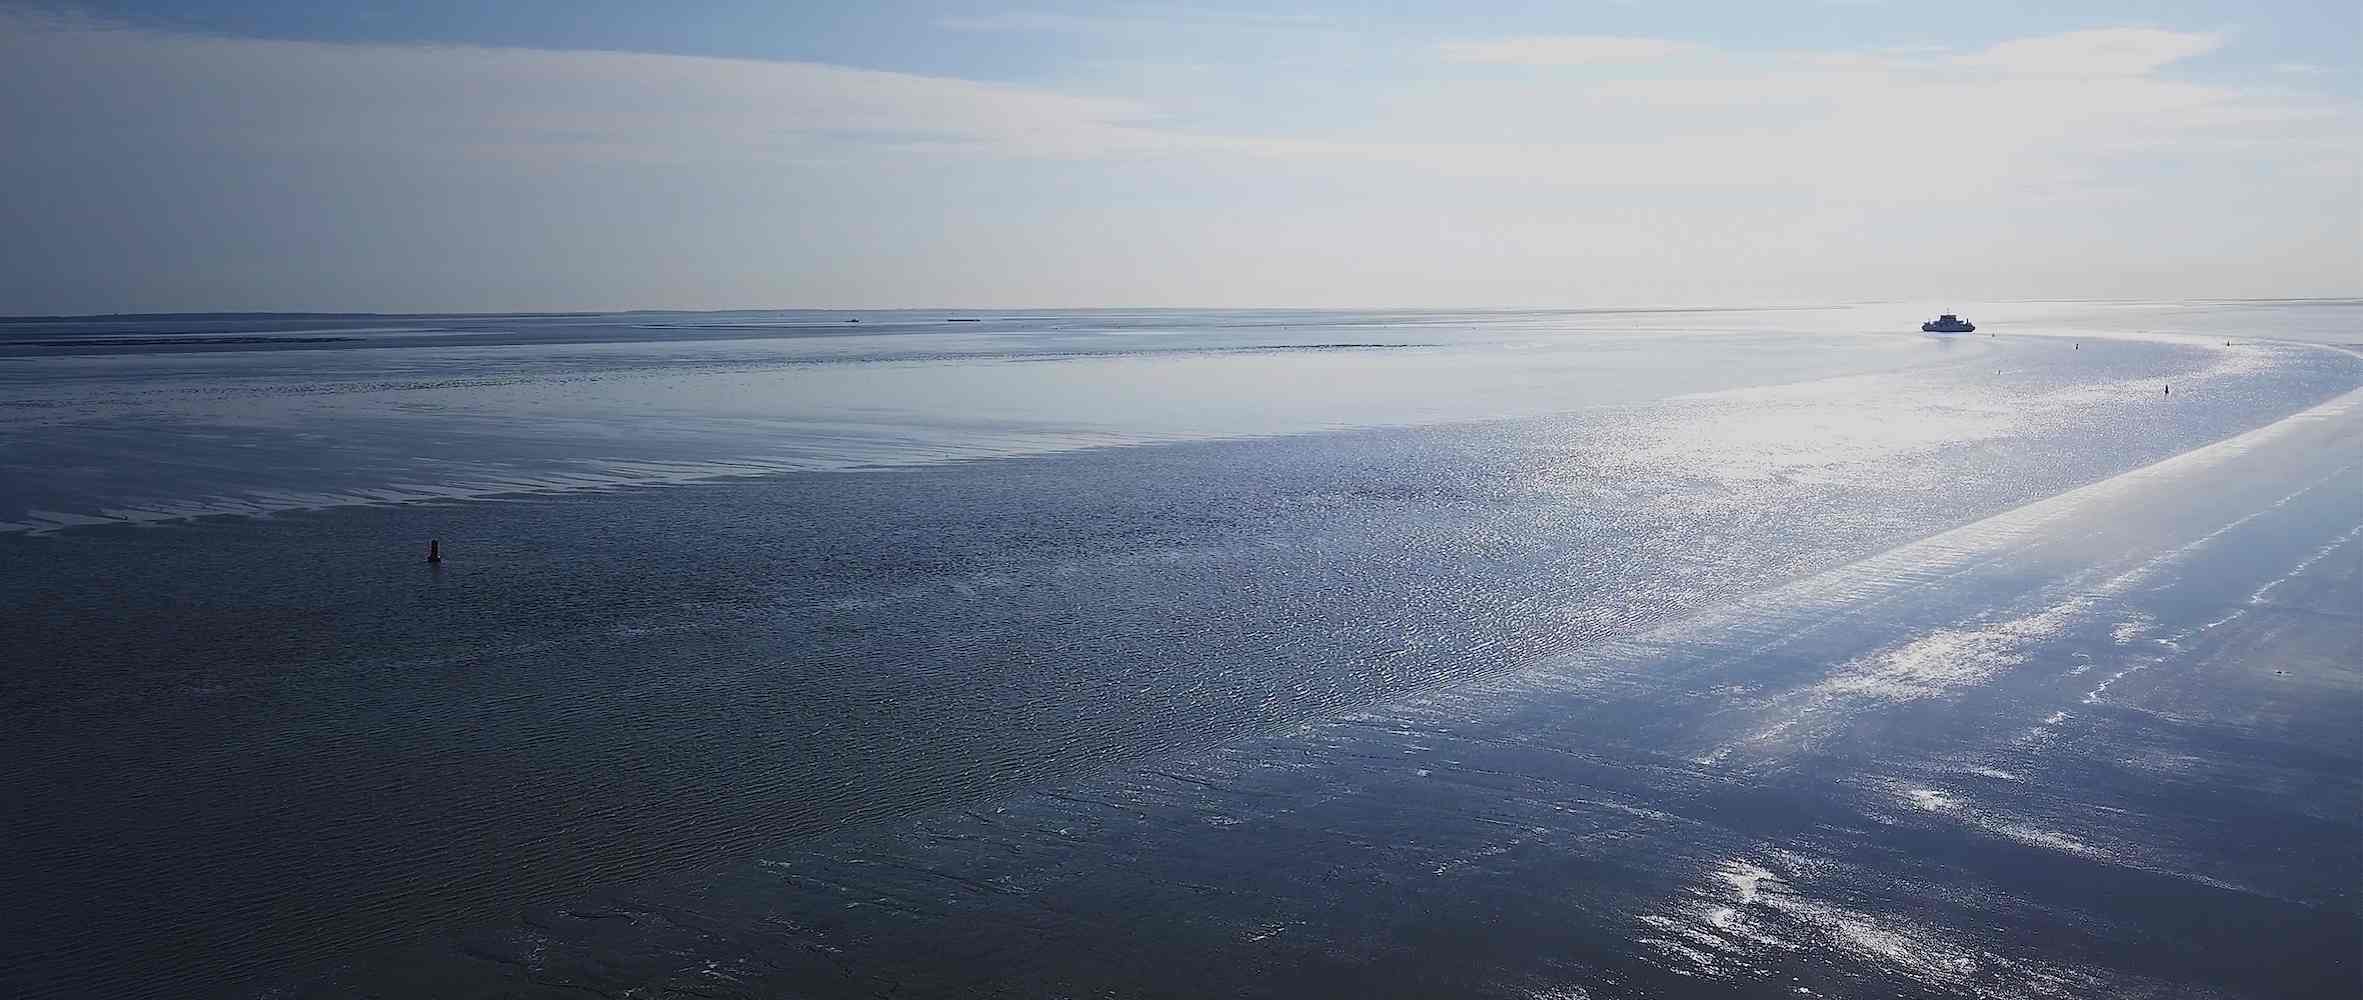 Nortek cover picture of the ocean